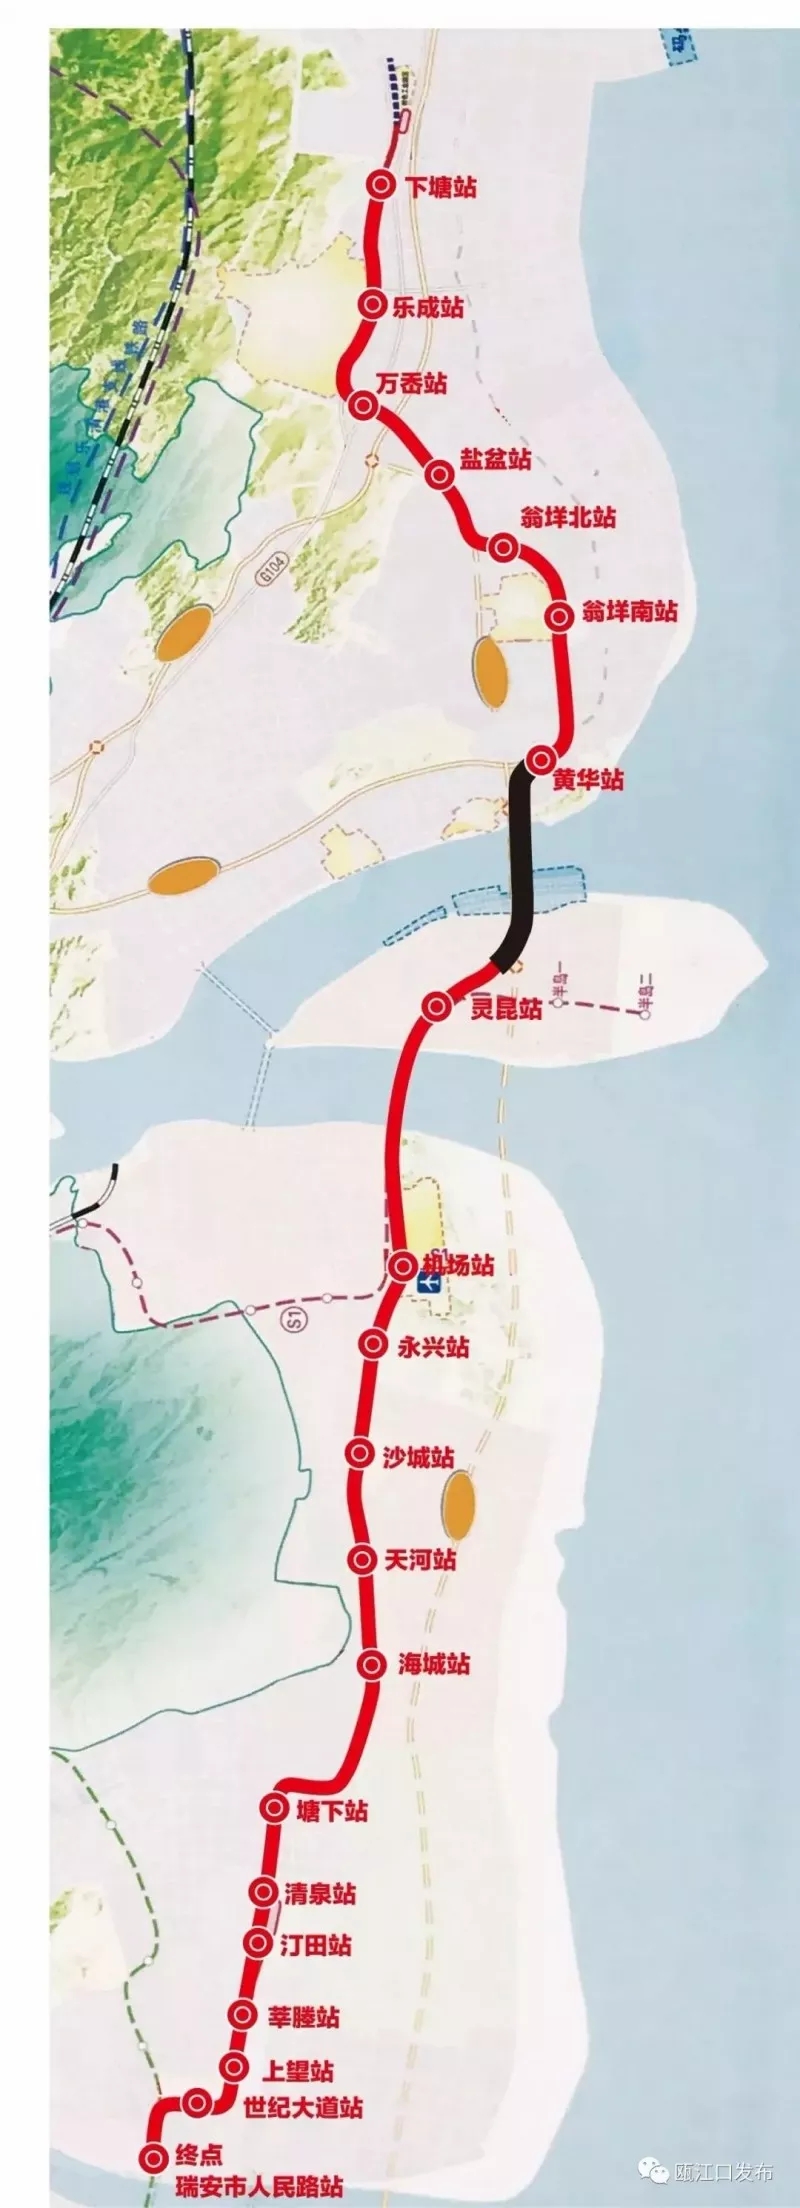 地铁s2线线路图图片